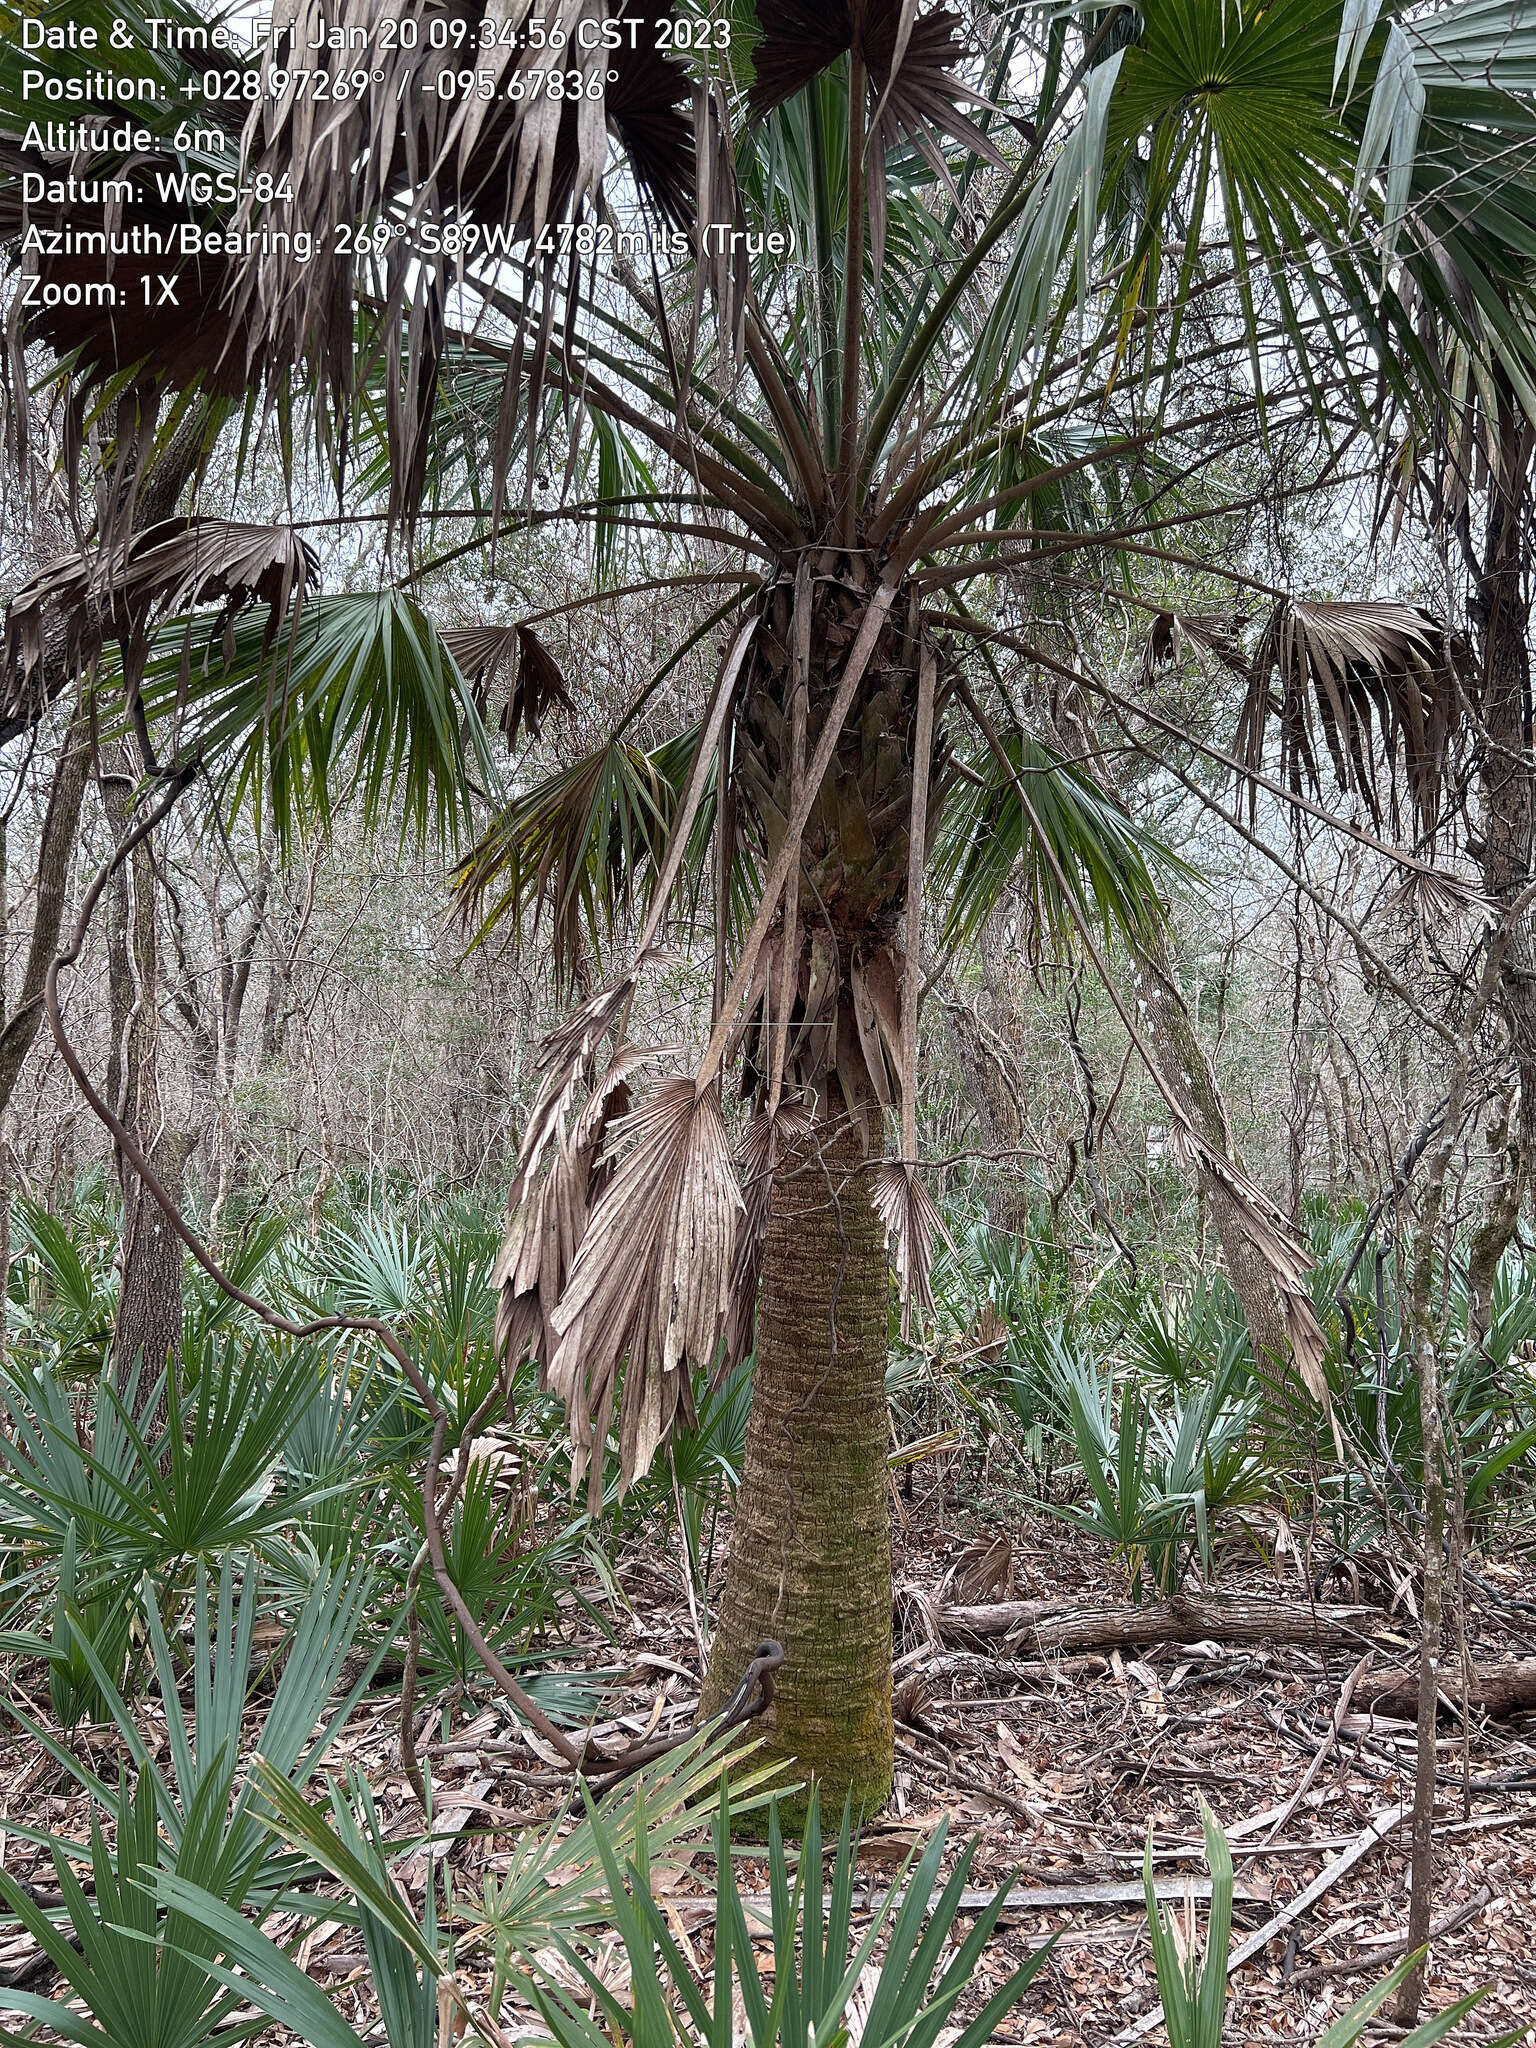 Image of Brazoria palmetto